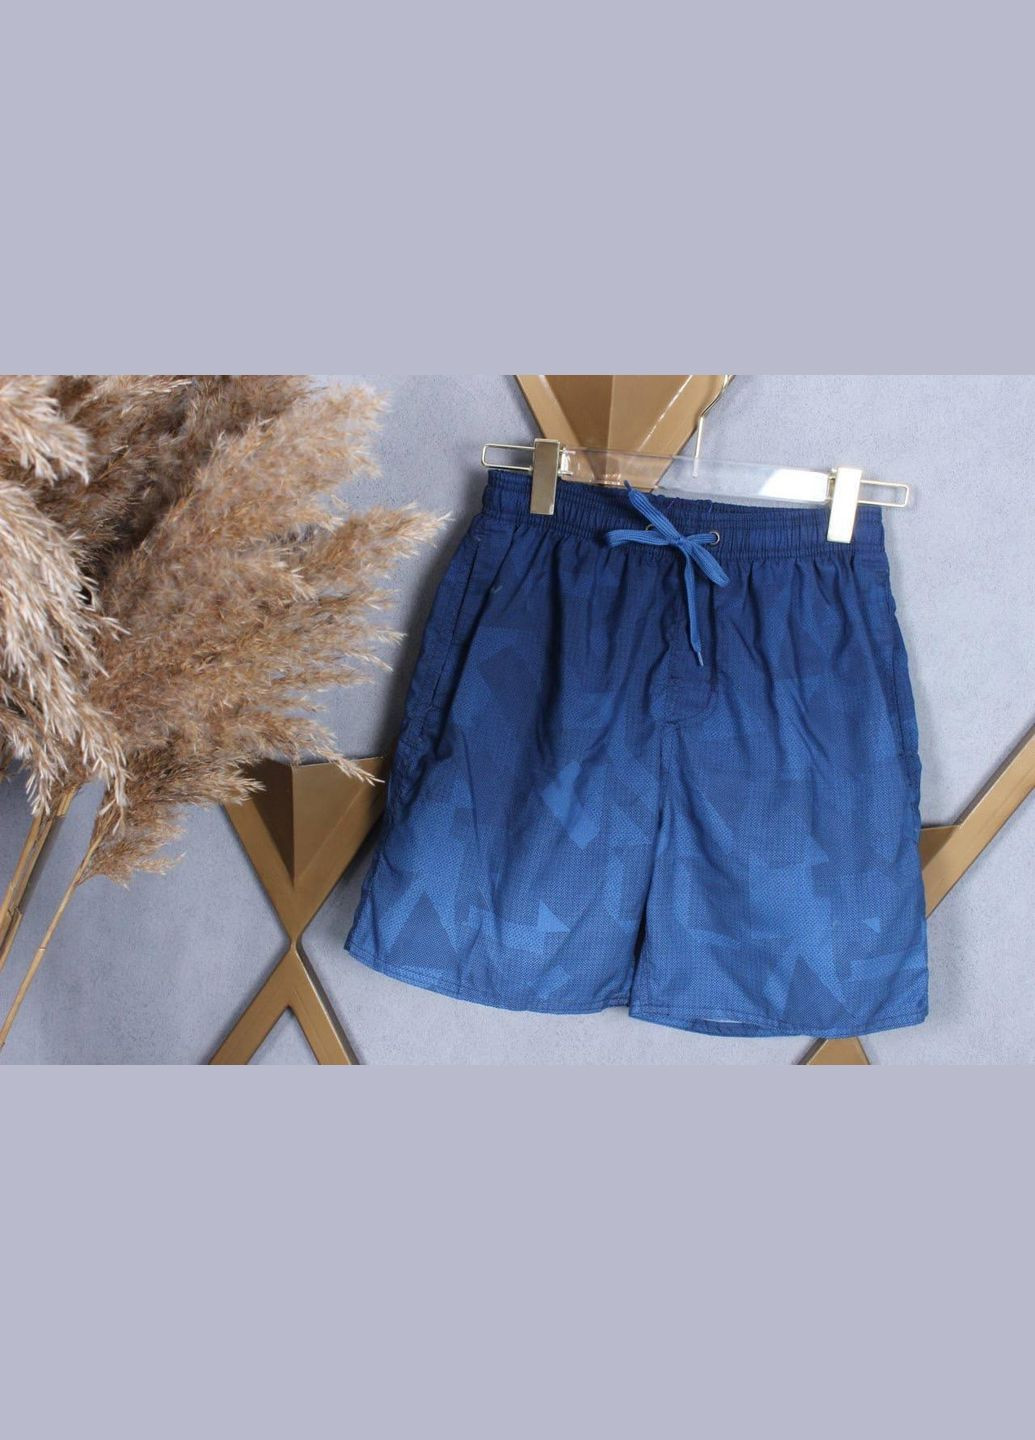 Фабричні шорти для чоловіків нова колекція D-2385 Синій, 4XL(58) Sofia (268025158)